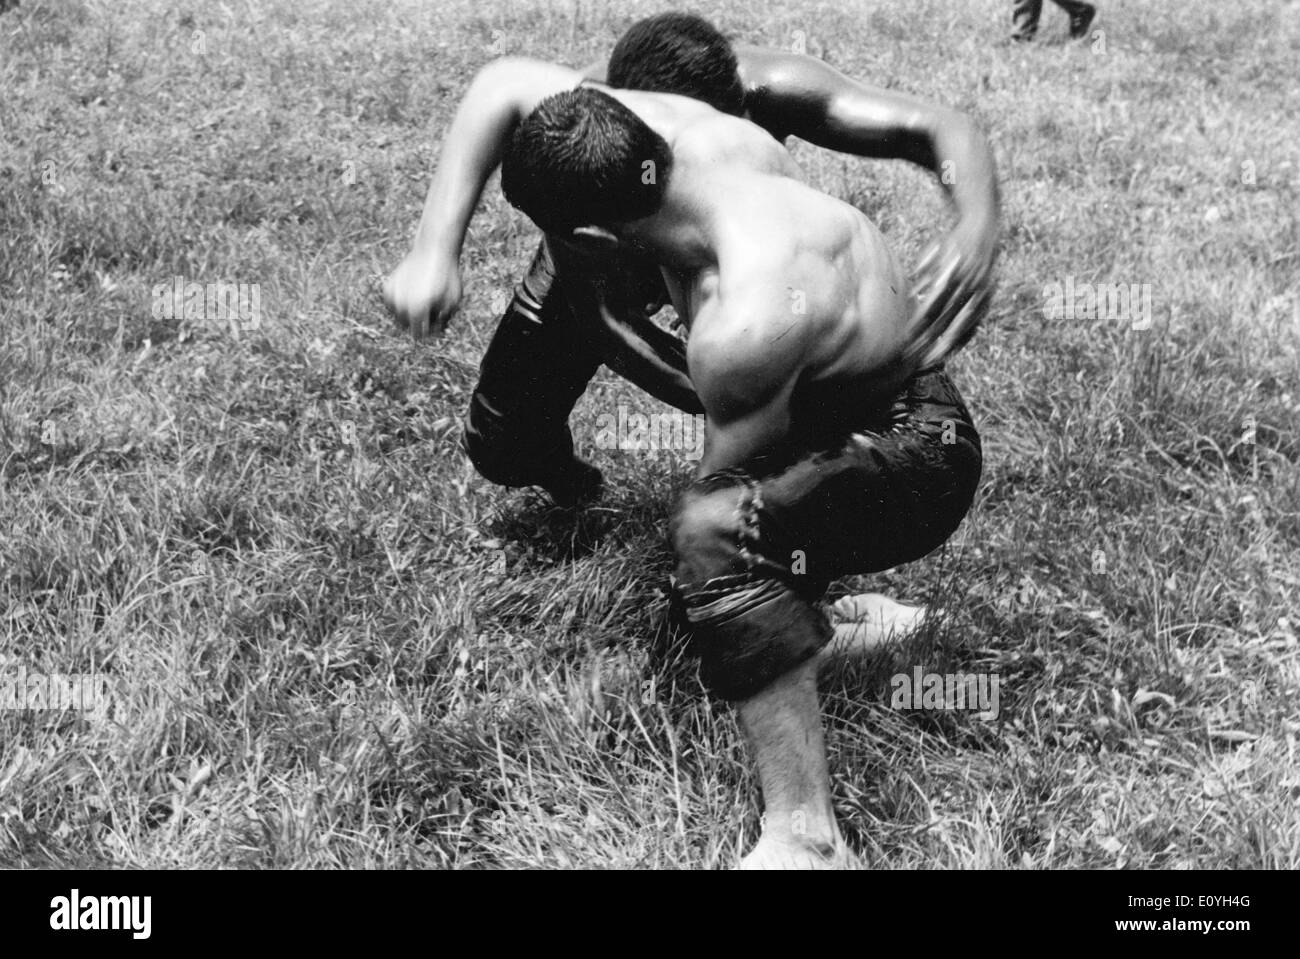 May 12, 1970; Zurich, Switzerland; Men wrestling in Switzerland. Stock Photo